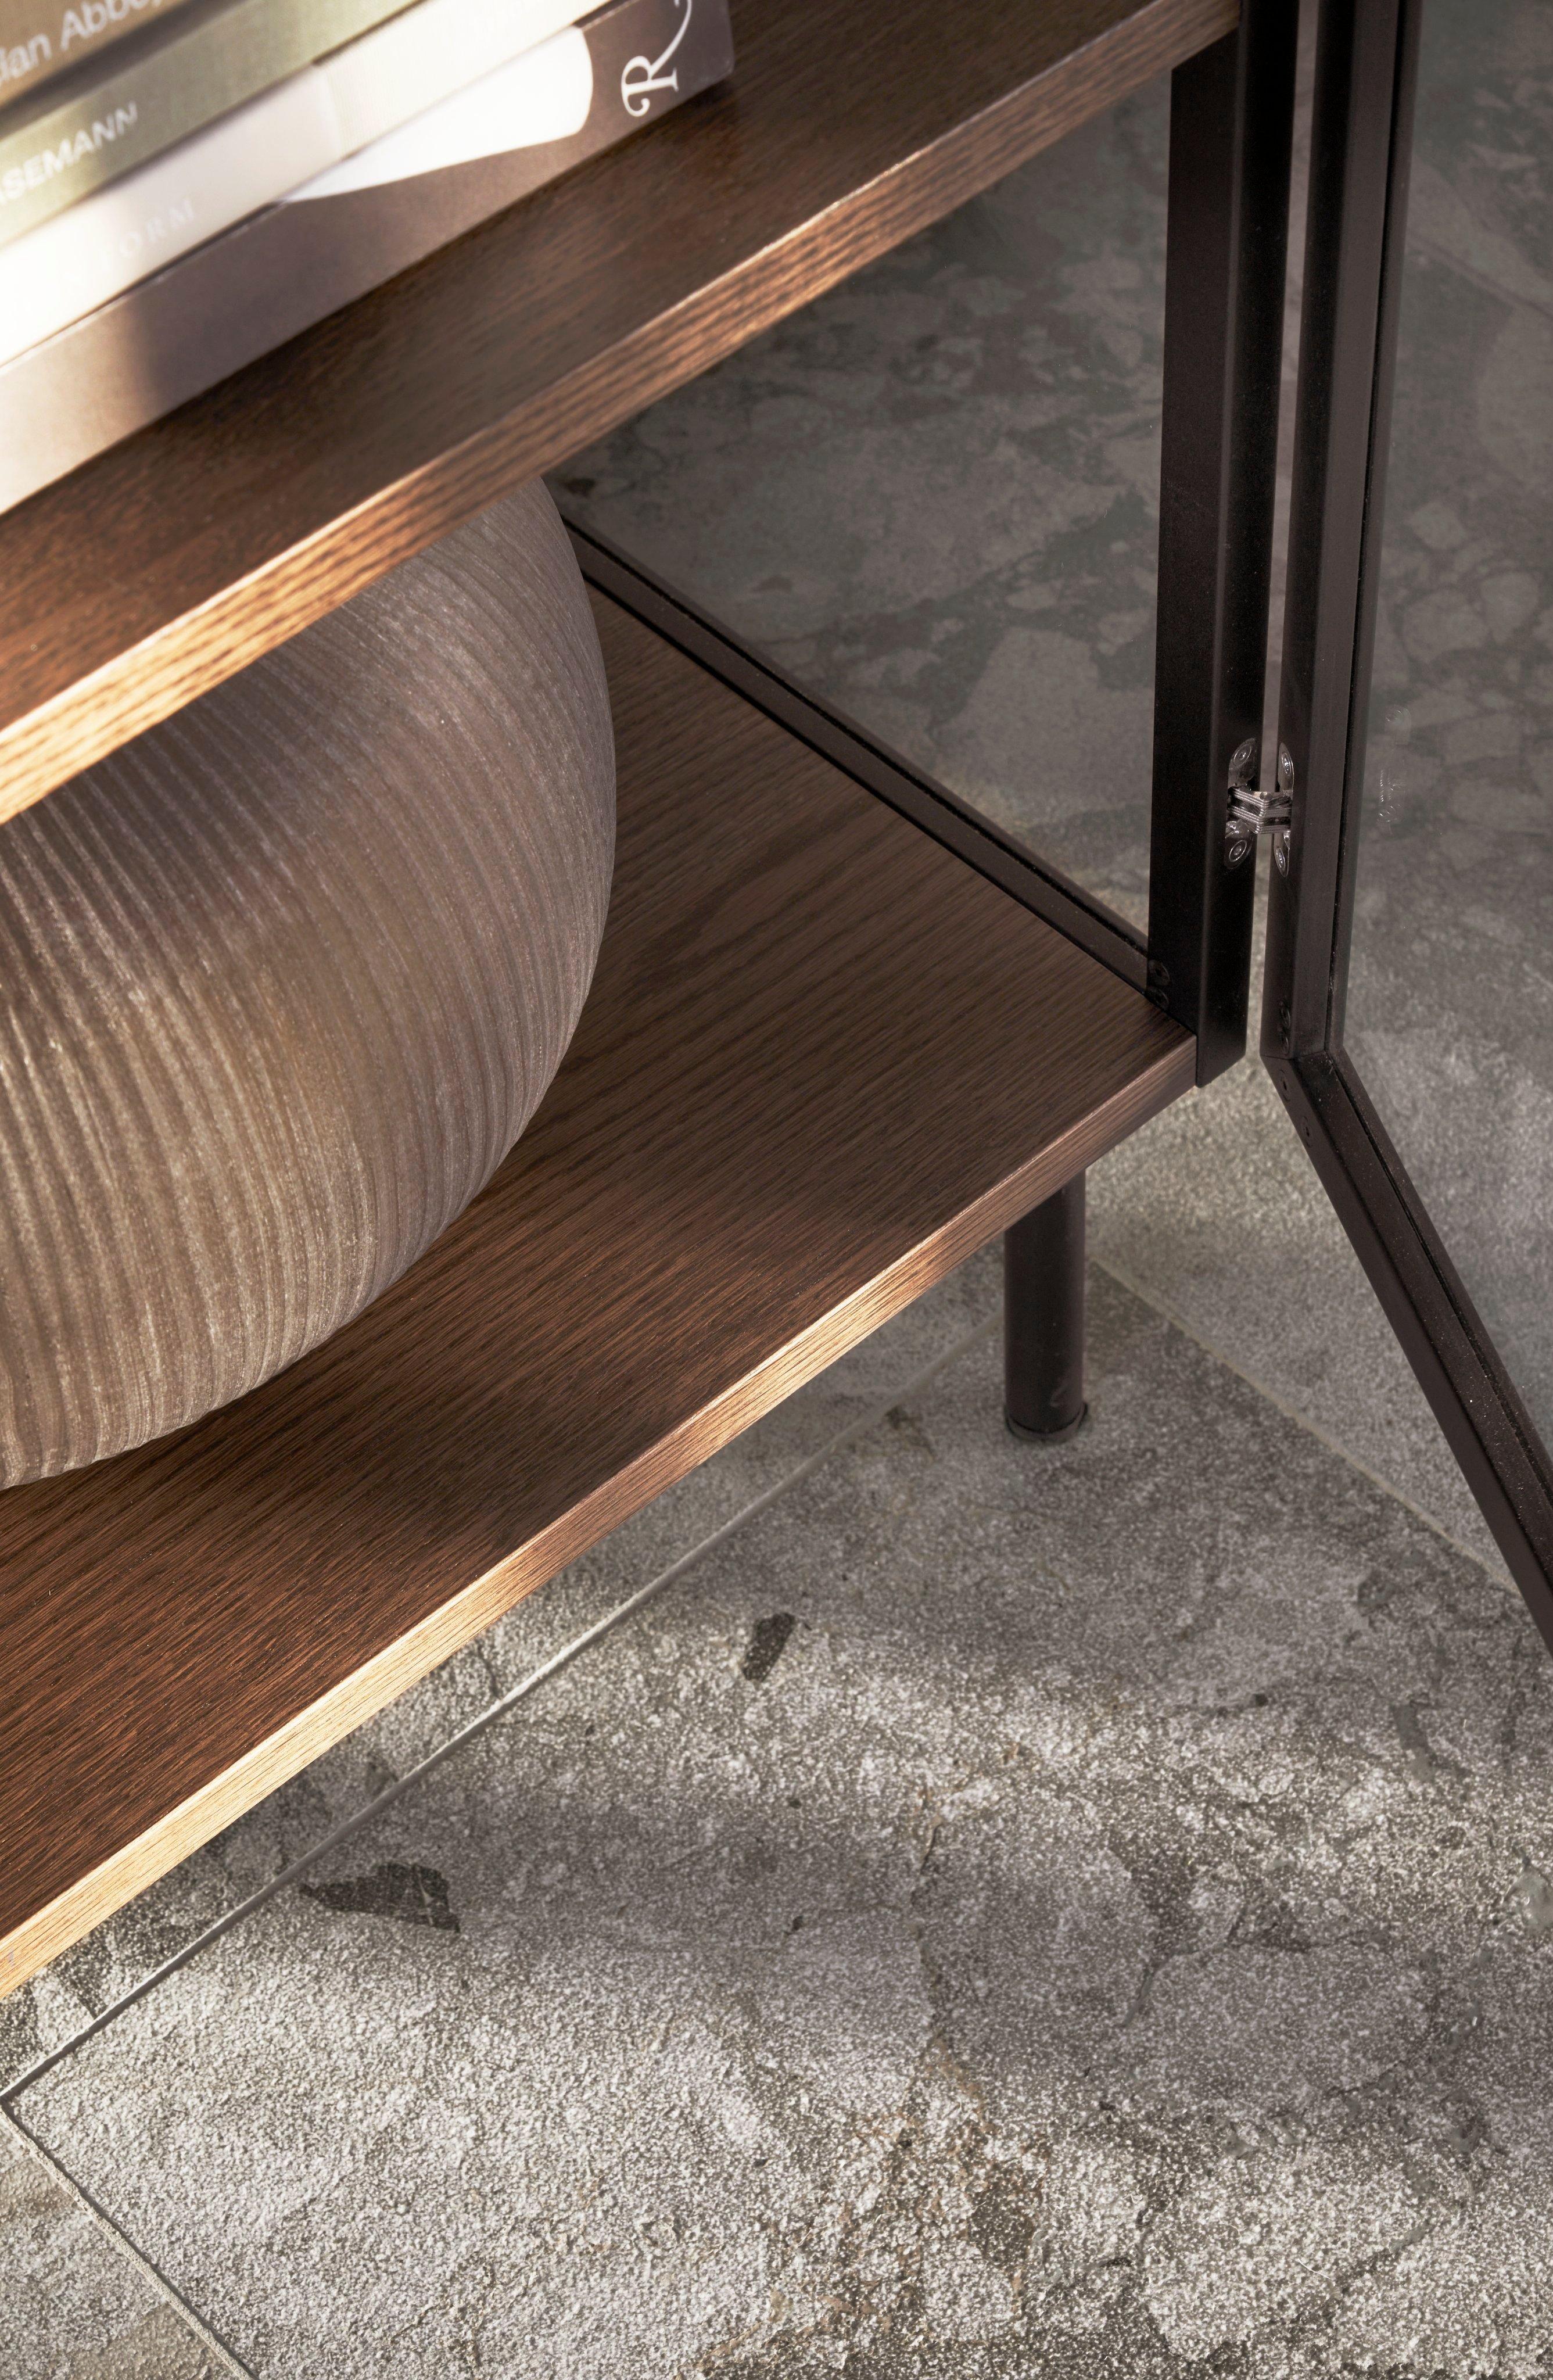 Close-up van een donkere houten plank met een vaas met textuur en boeken, tegen een betonnen vloer.